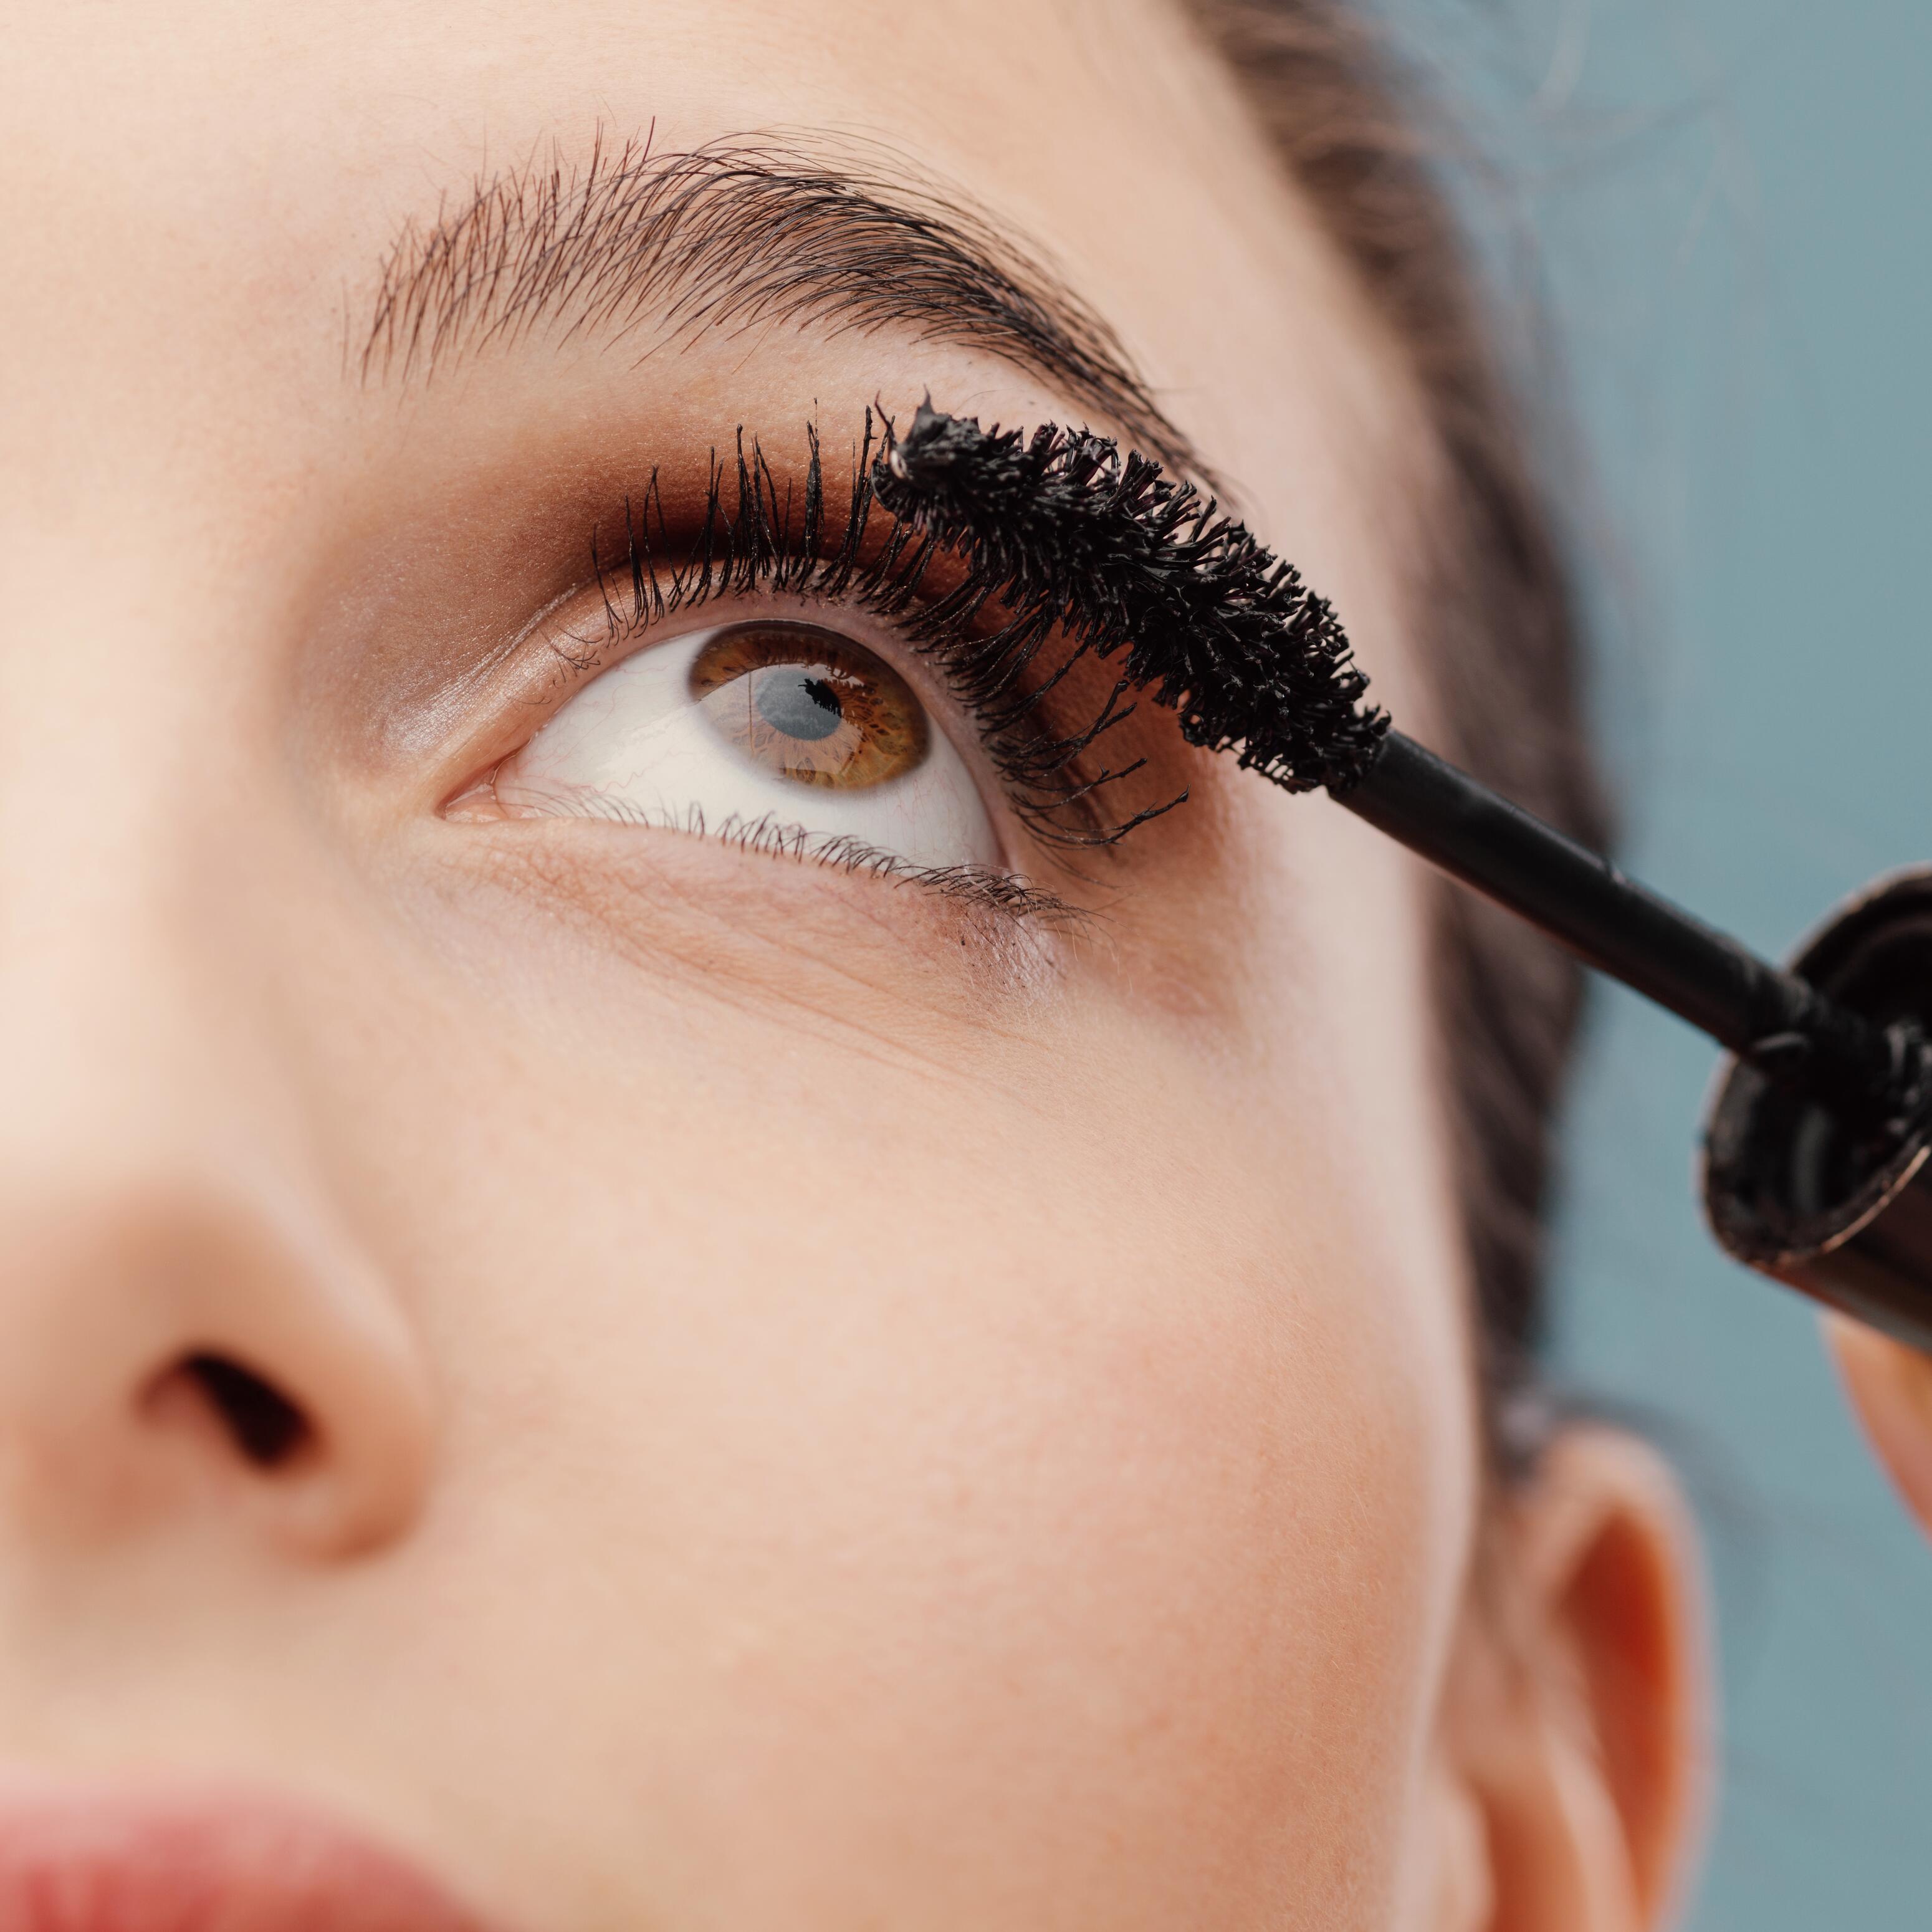 Des toxines dans certains produits de maquillage longue durée